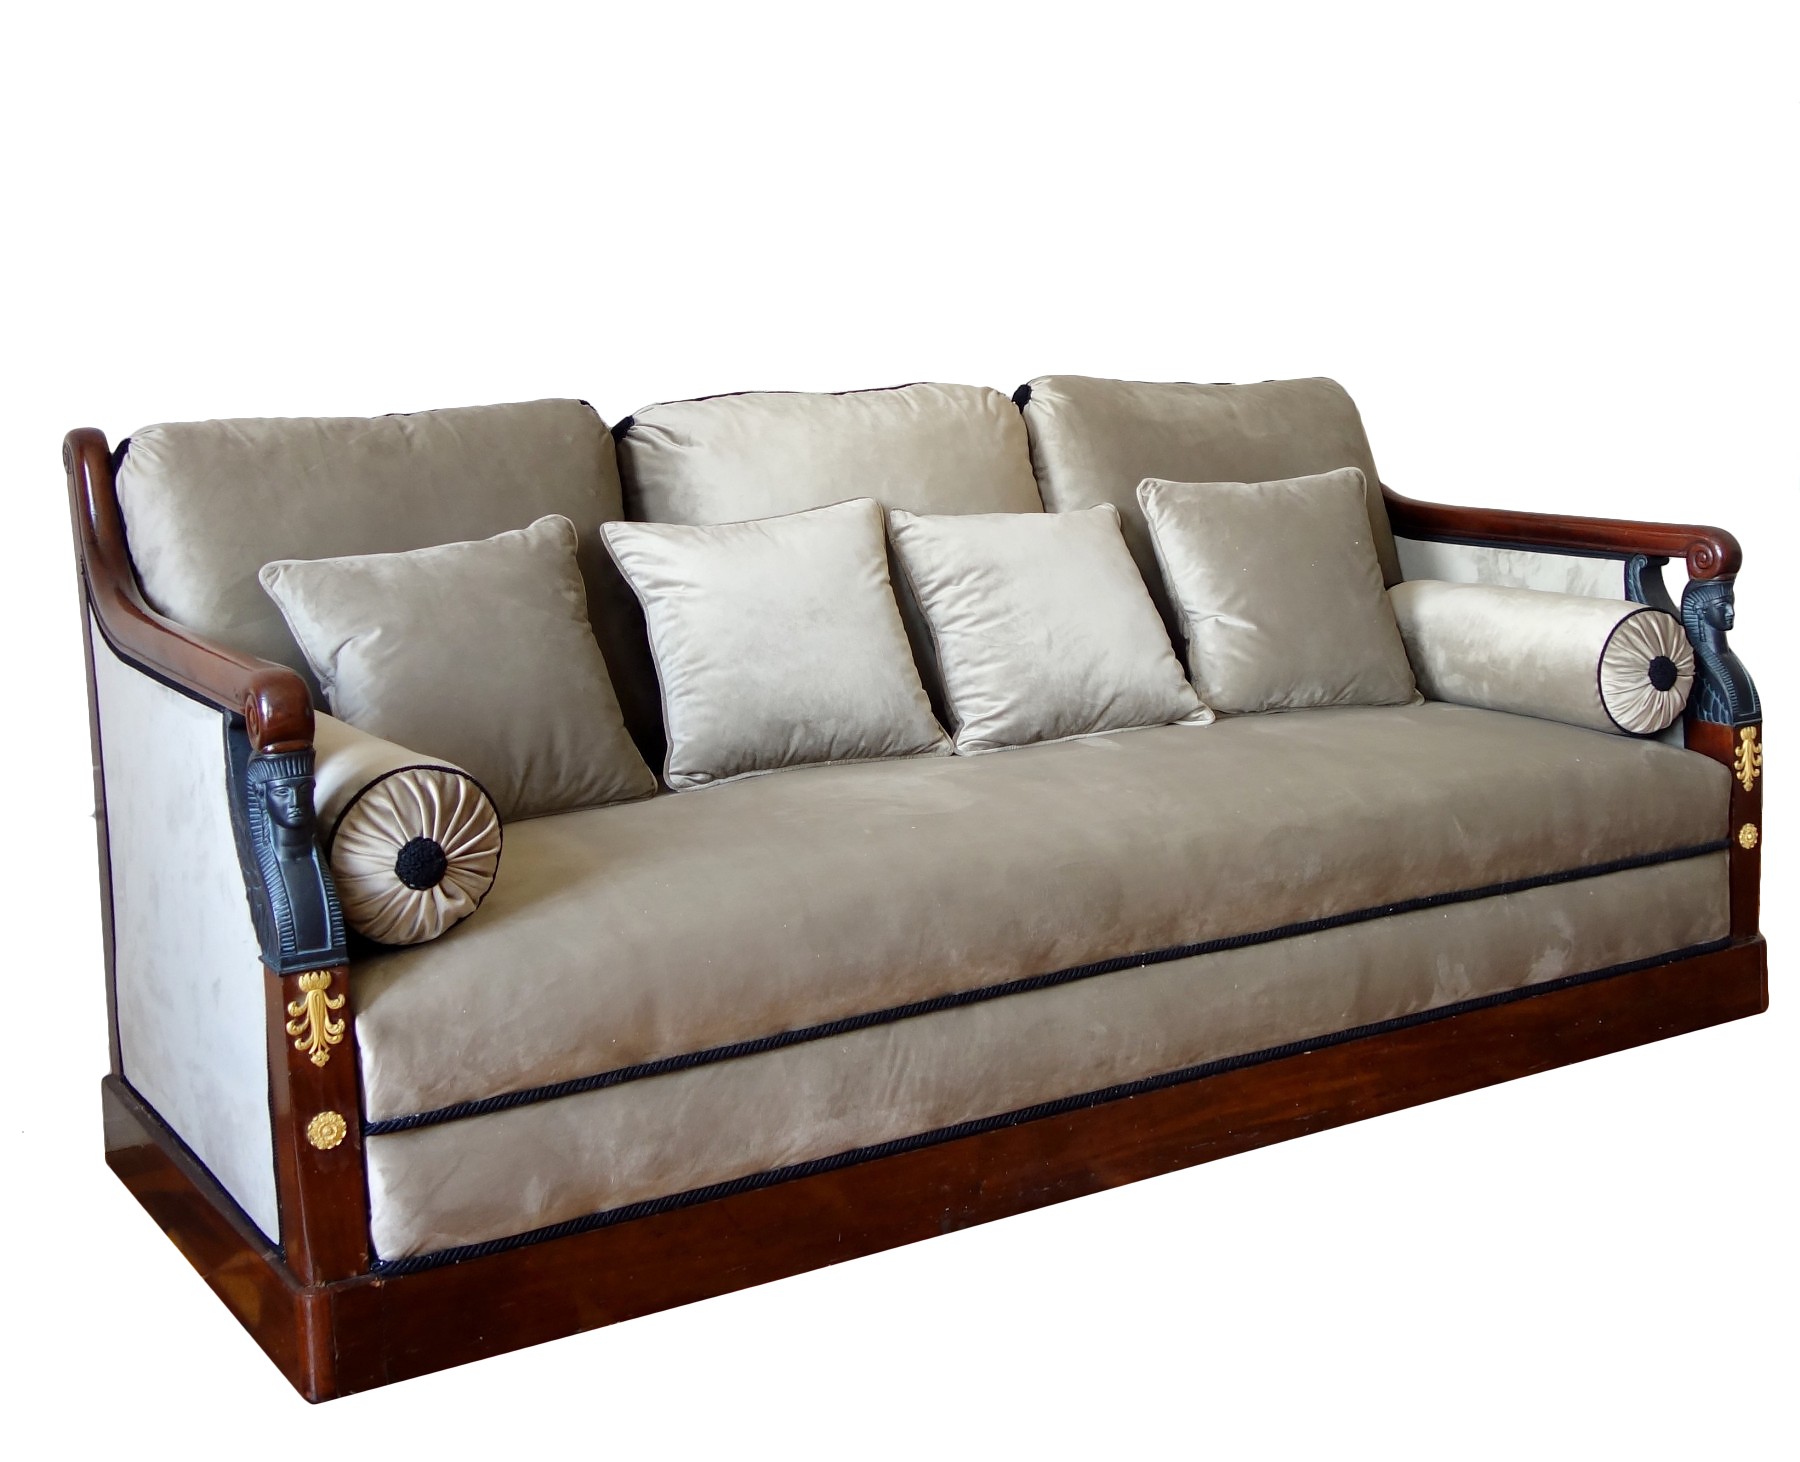 Canapé sofa à la turque d'époque Empire - XIXe siècle - N.87954